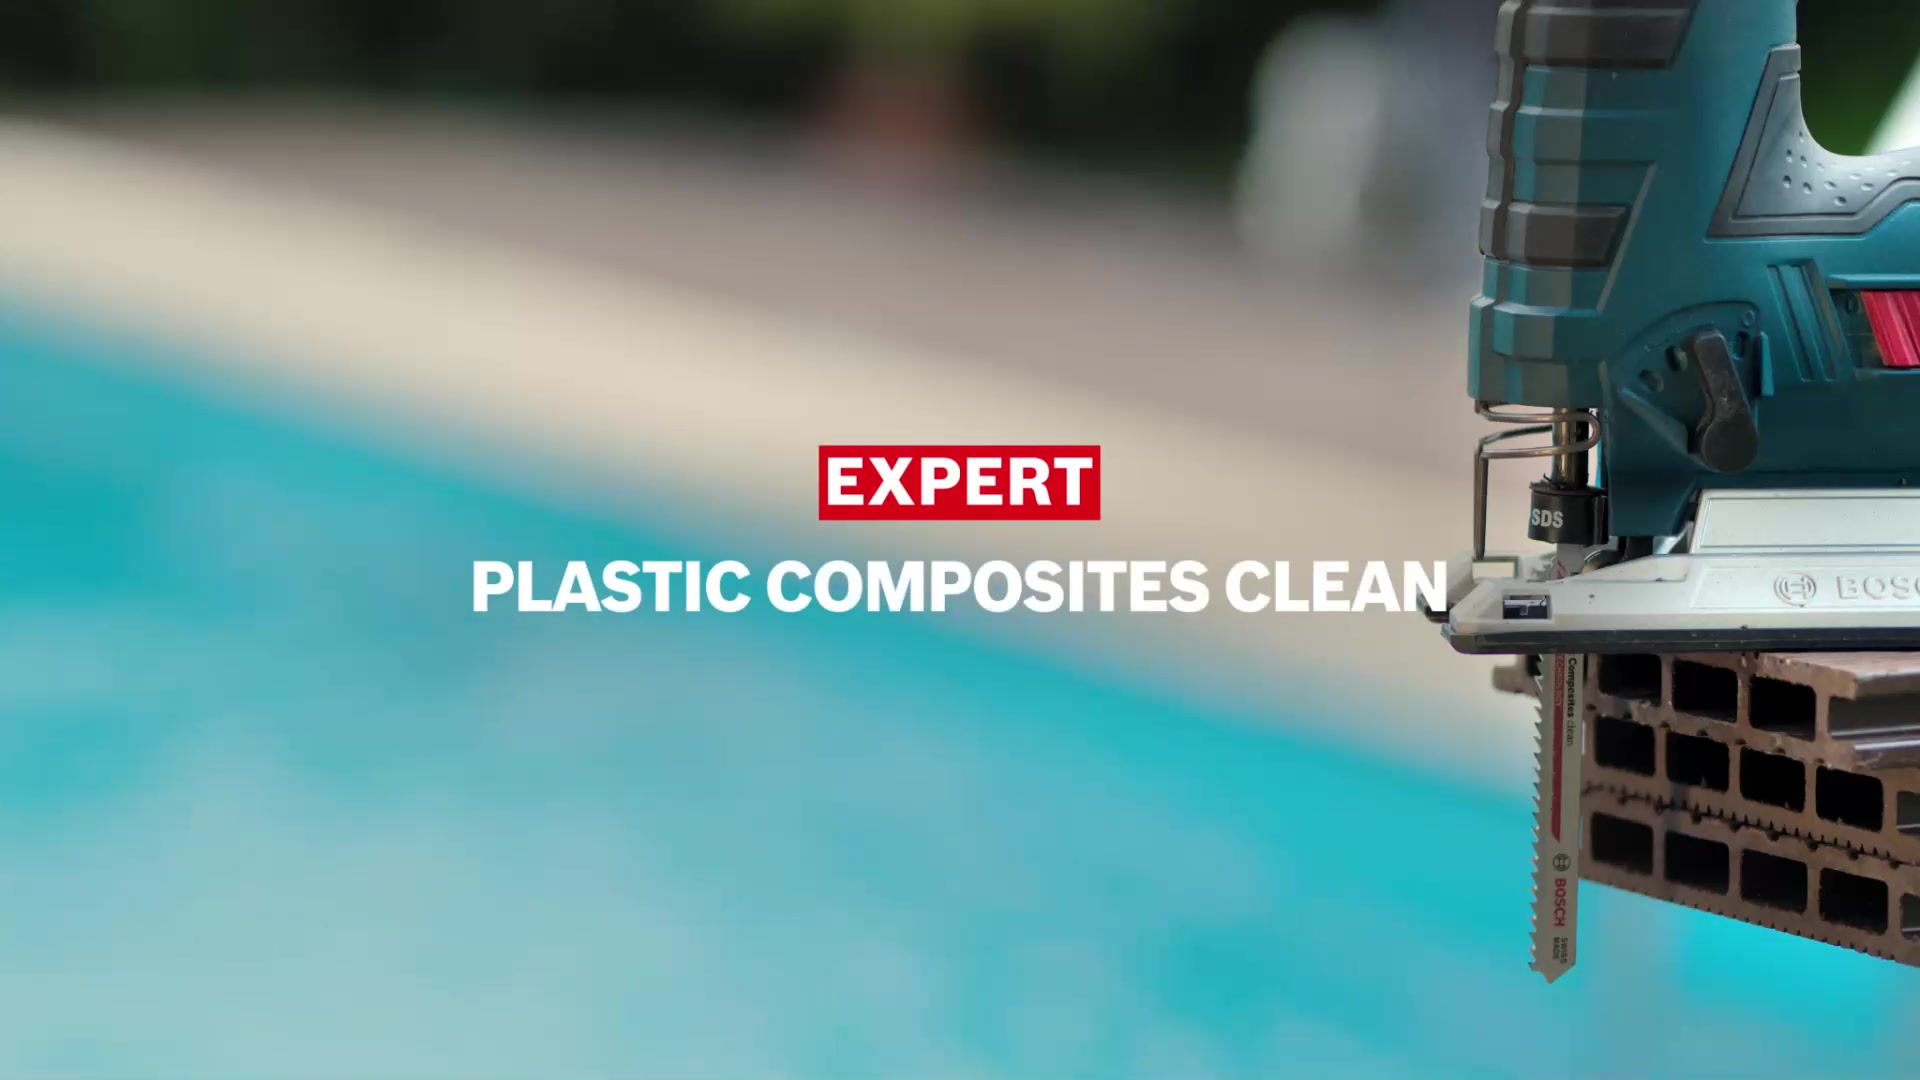 EXPERT Plastic Composites Clean